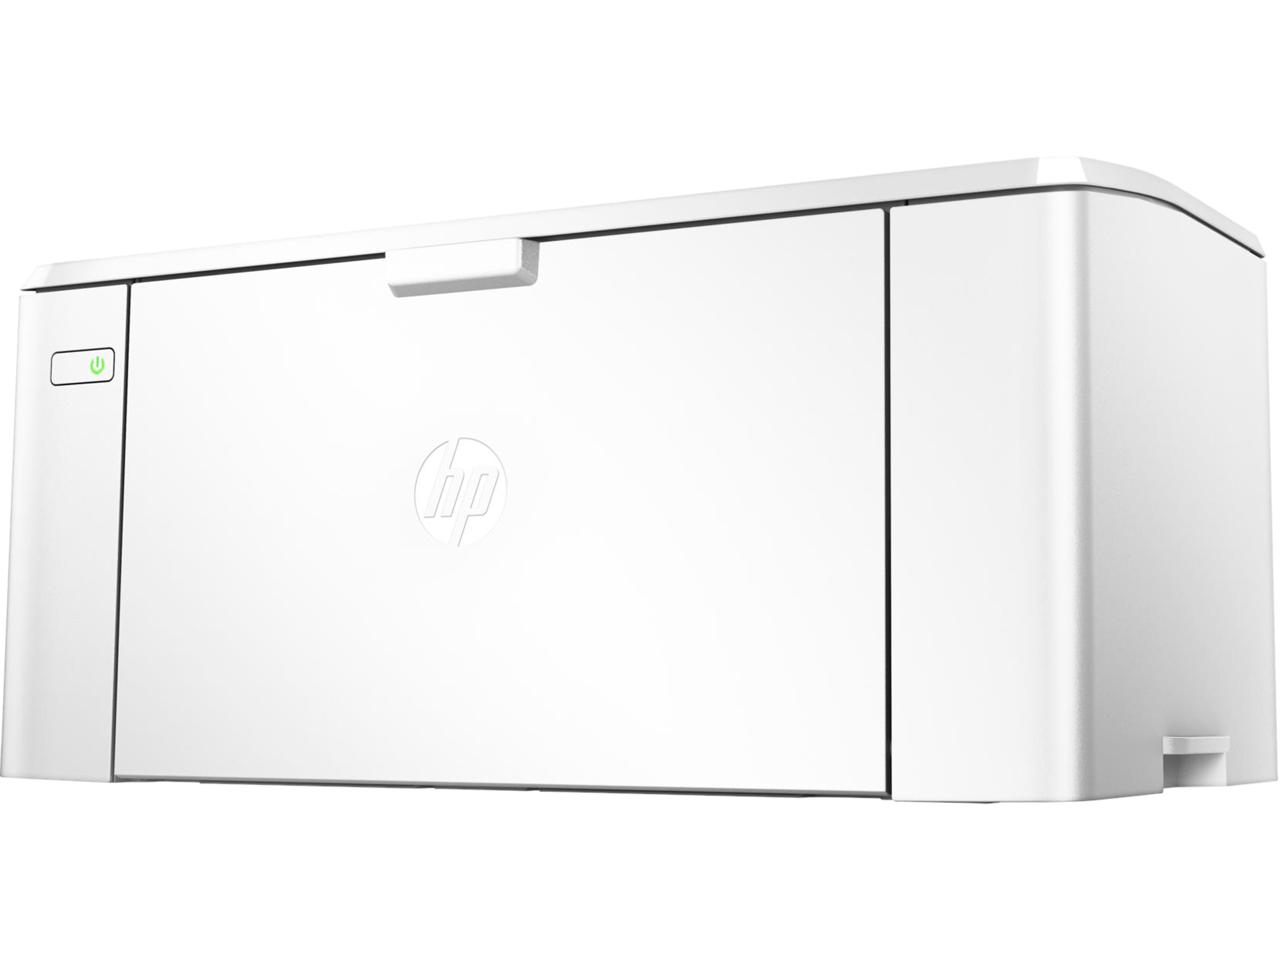 HP LaserJet Pro M102w Printer G3Q35A